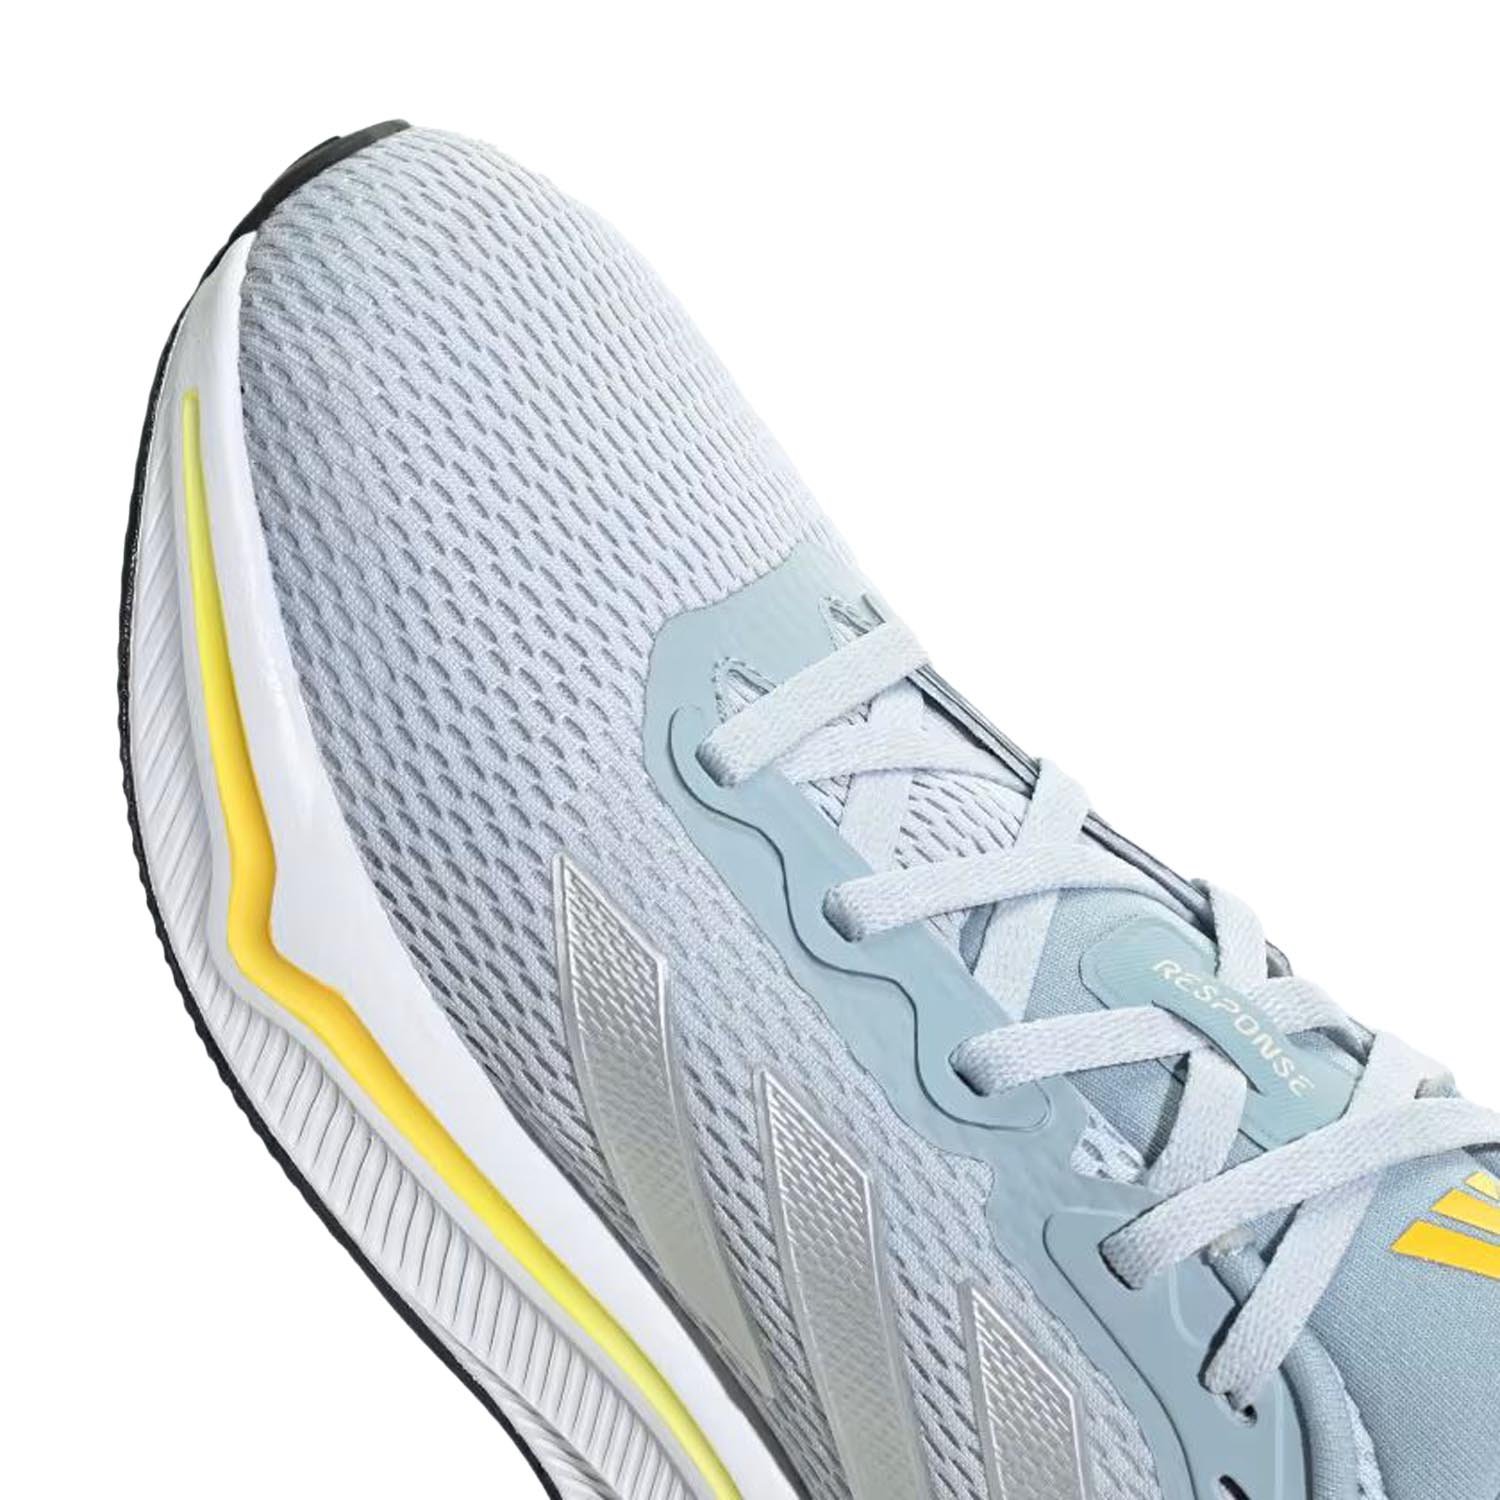 Adidas Response Kadın Koşu Ayakkabısı - Mavi - 1